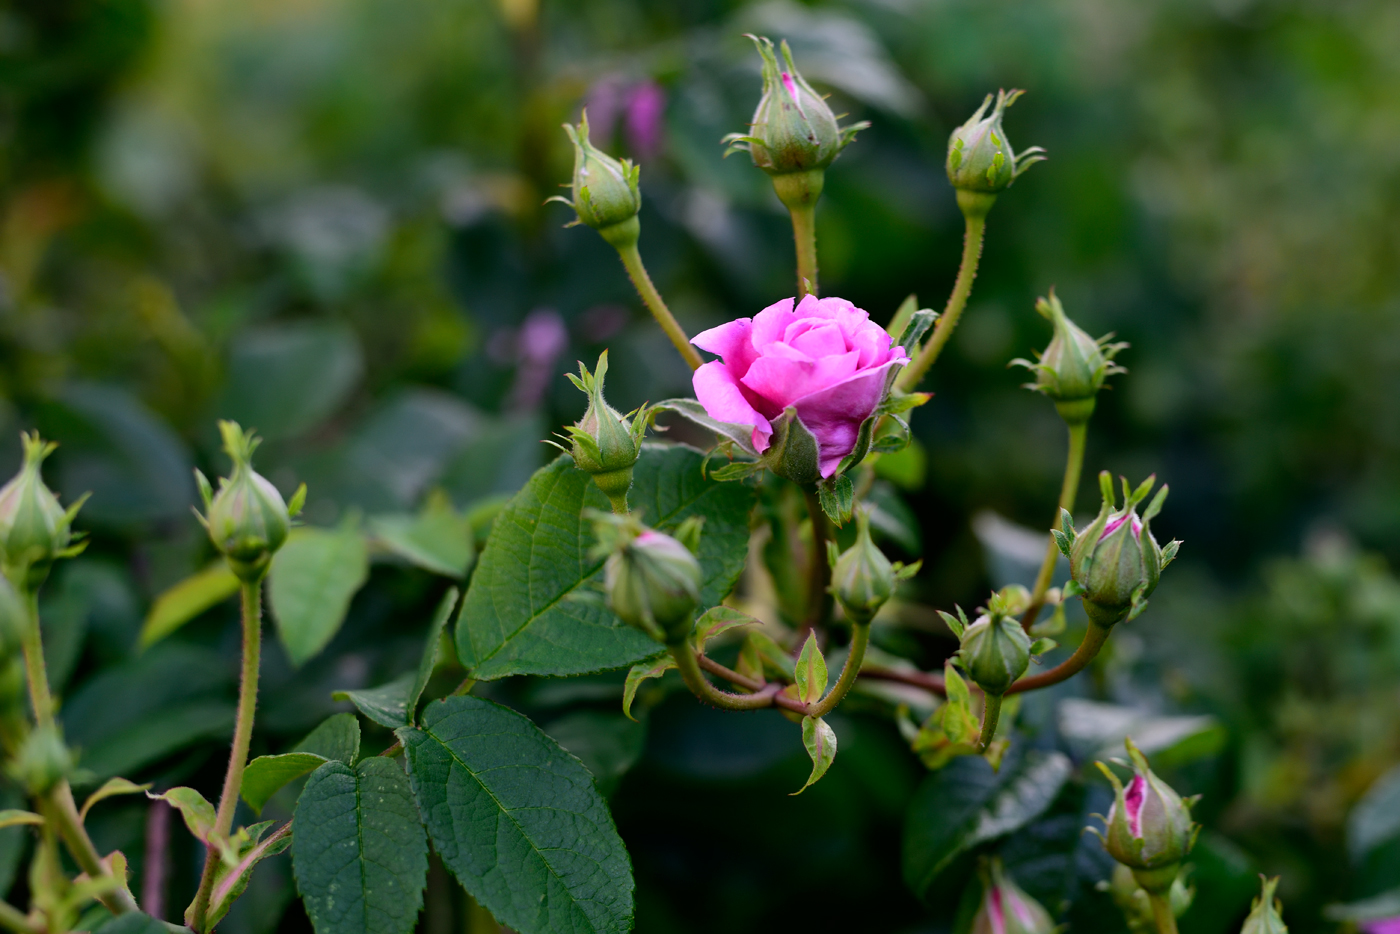 Rosa glauca in Rasen-Schmiele, Deschampsia cespitosa